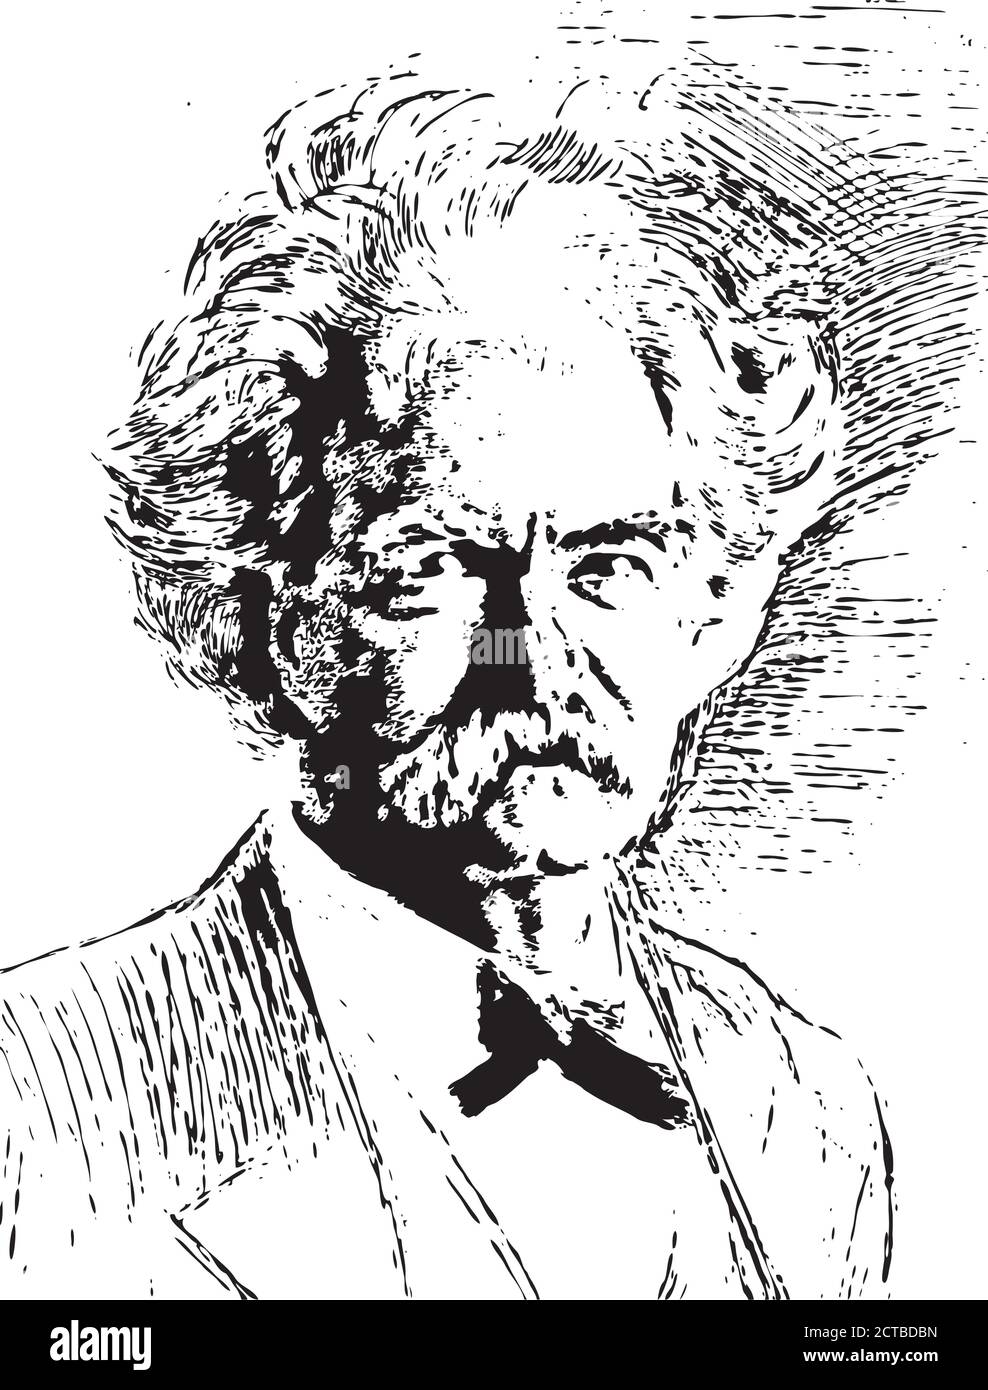 Portrait vectoriel de Mark Twain Samuel Langhorne Clemens (1835 – 1910), connu sous son nom de plume Mark Twain, est un écrivain, humoriste, entrepreneur américain Illustration de Vecteur